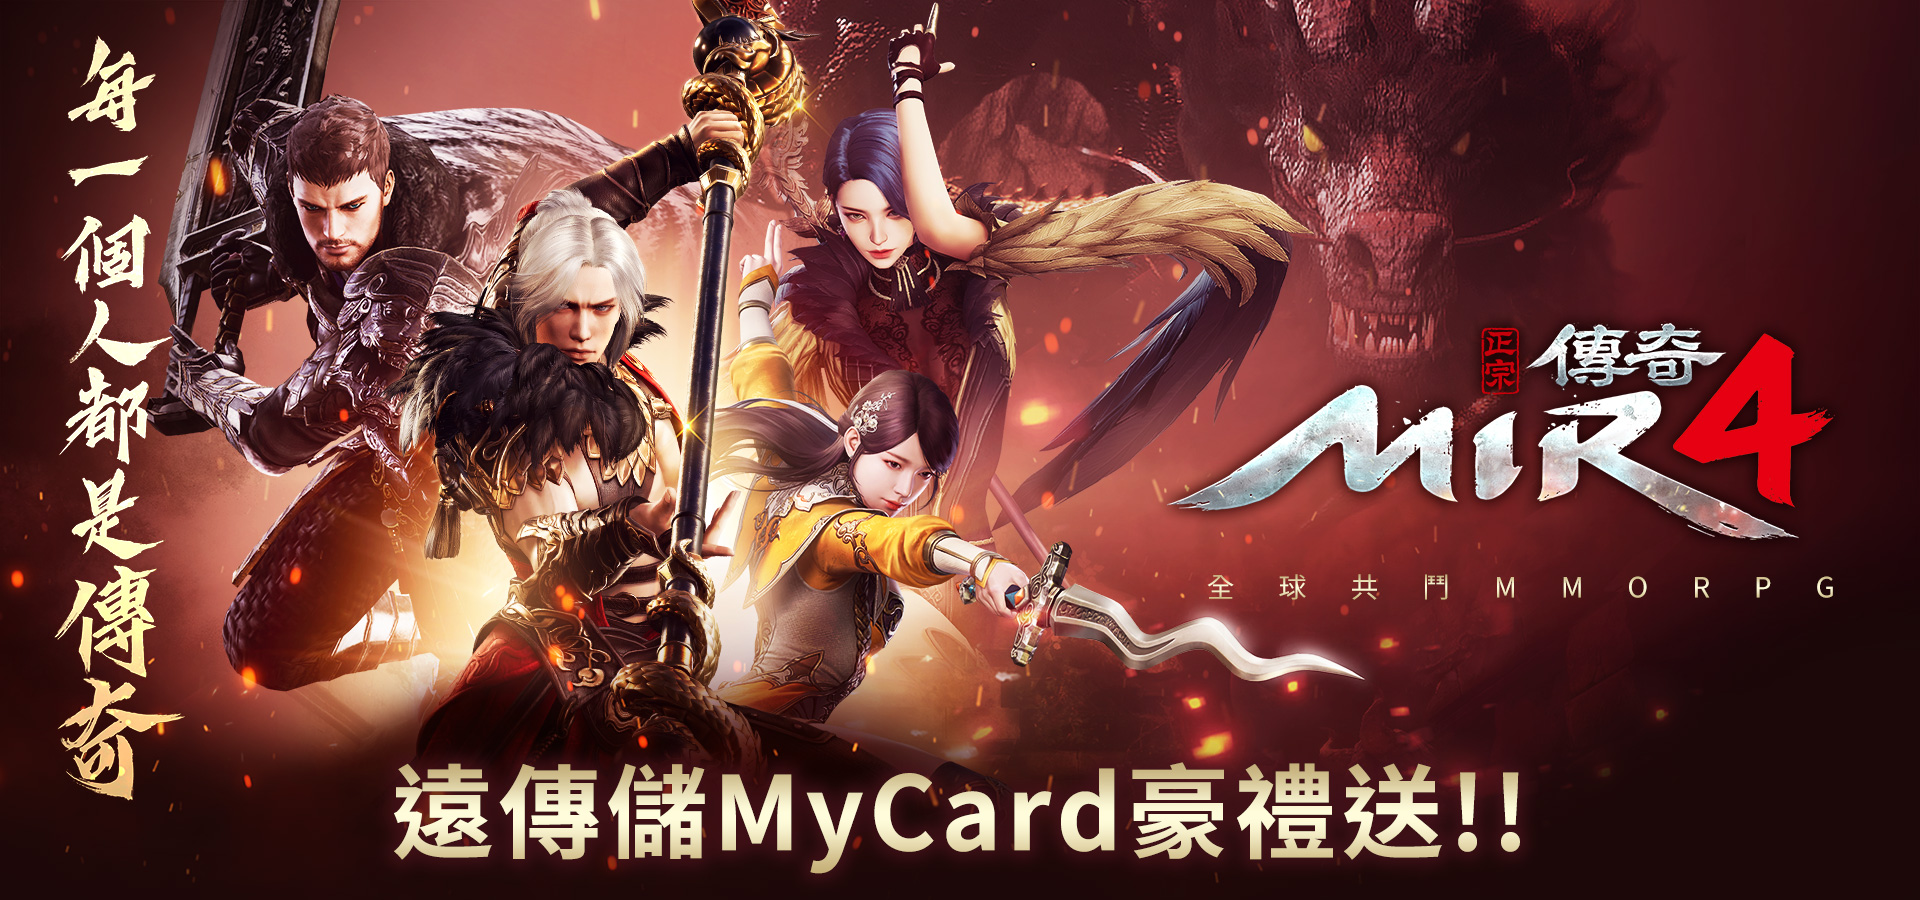   《傳奇4》MyCard儲值享超值好禮回饋-遠傳電信